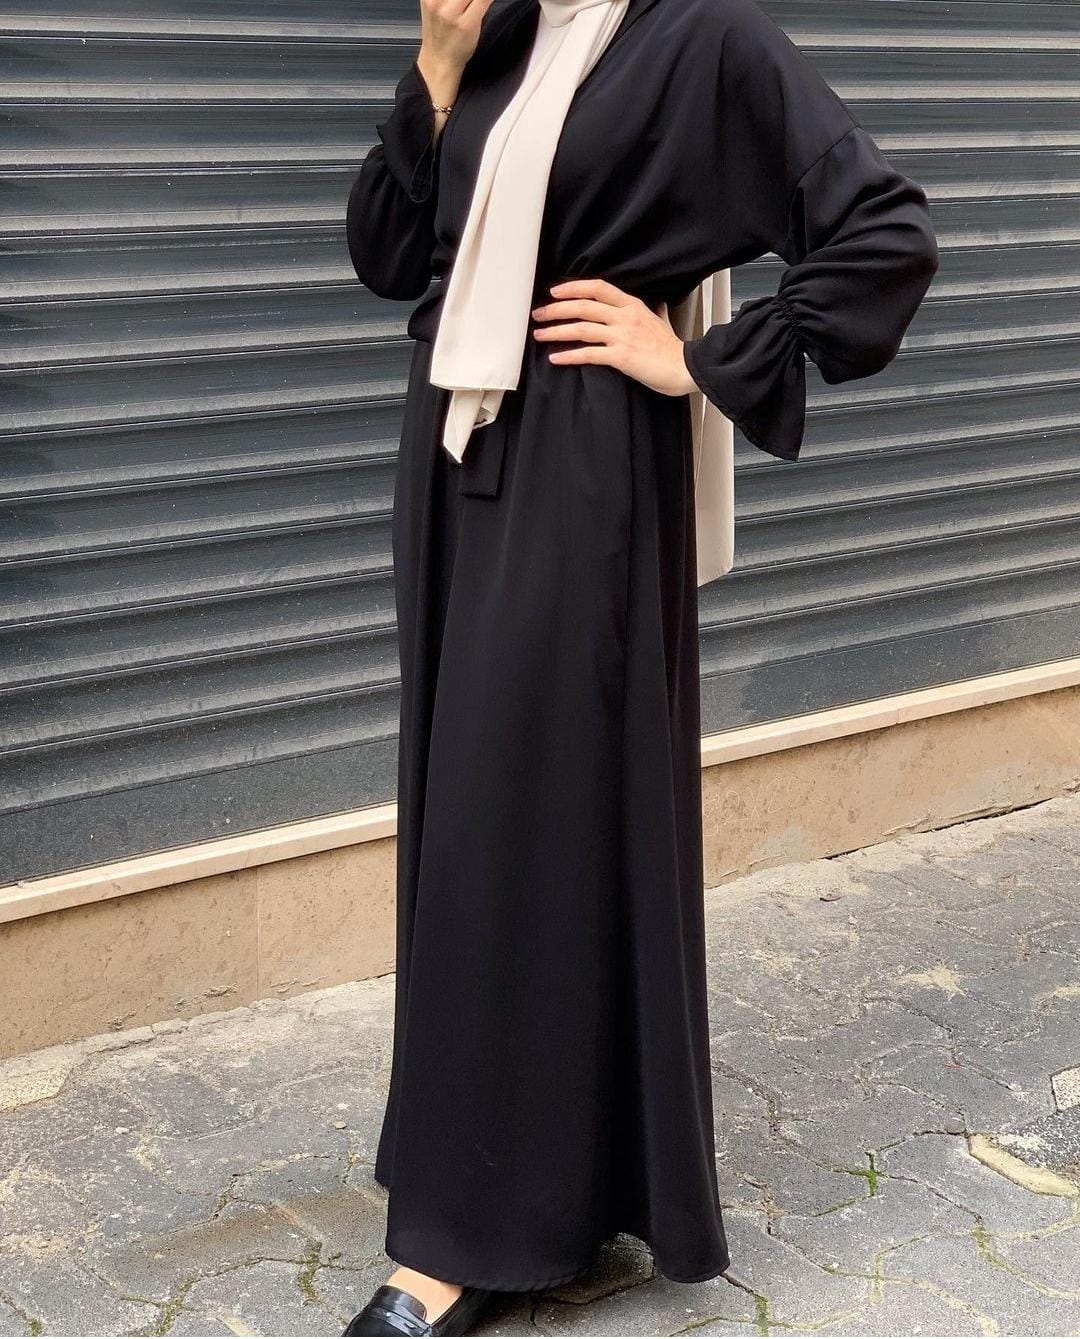 Black abaya